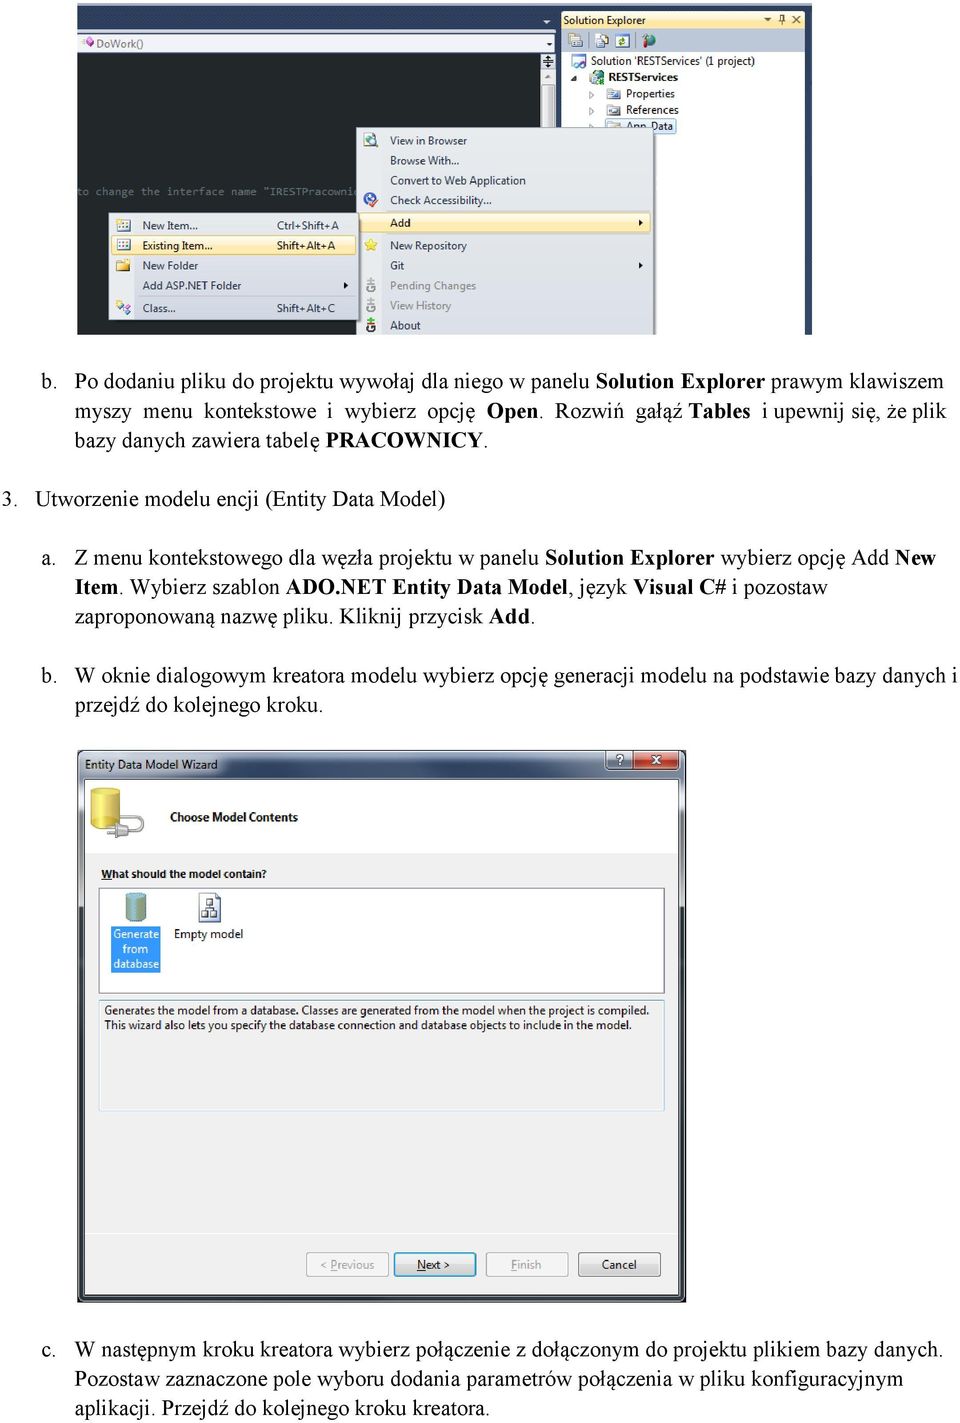 Z menu kontekstowego dla węzła projektu w panelu Solution Explorer wybierz opcję Add New Item. Wybierz szablon ADO.NET Entity Data Model, język Visual C# i pozostaw zaproponowaną nazwę pliku.